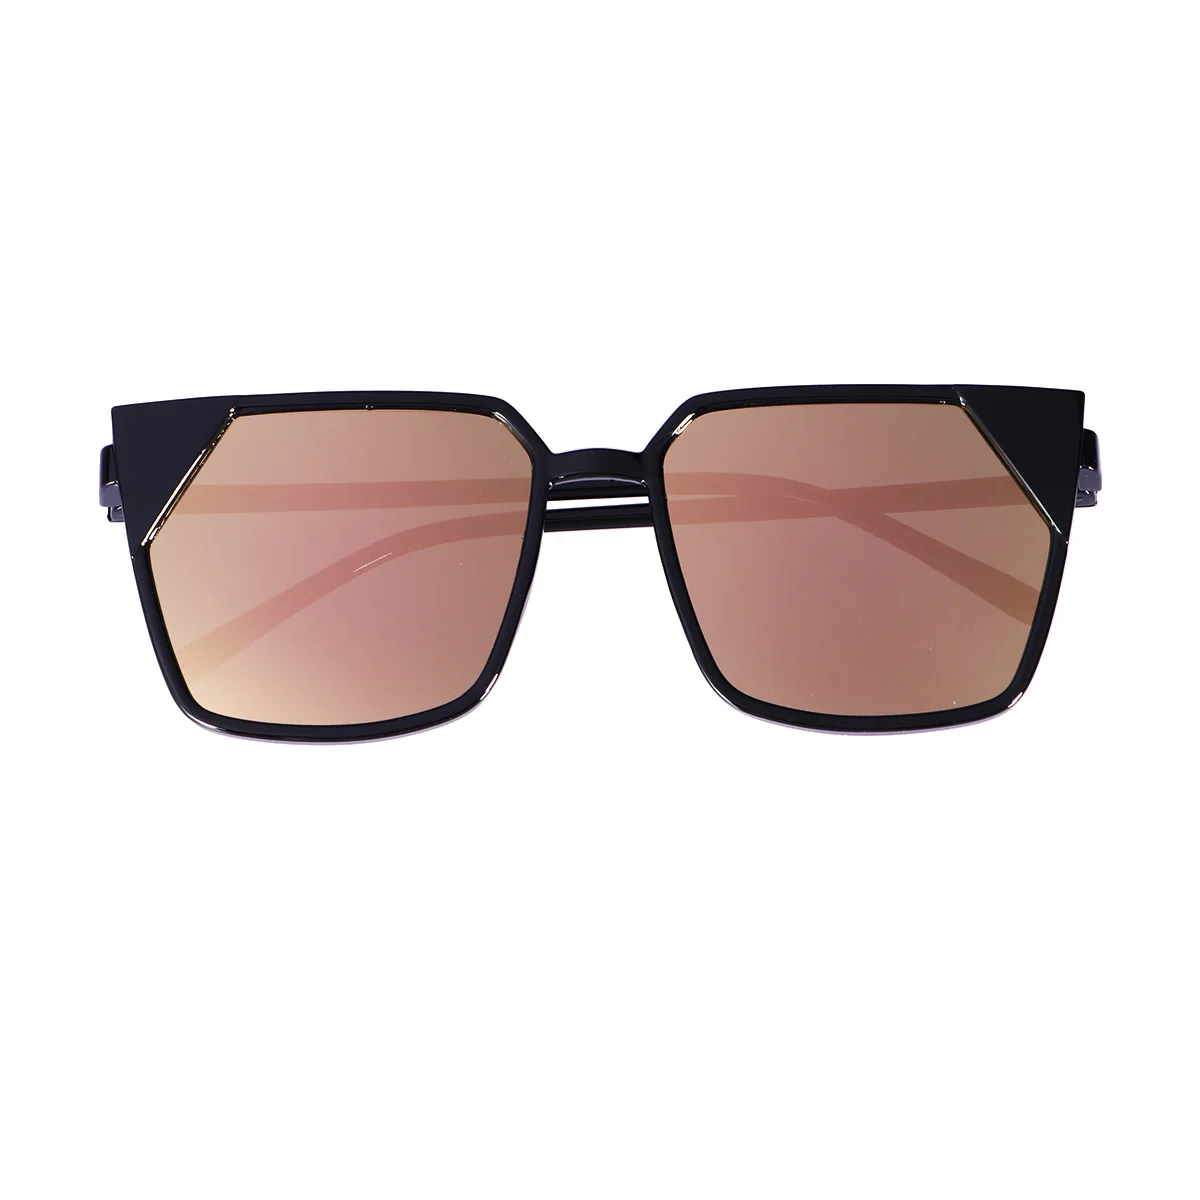 1 шт Мода Для мужчин Для женщин зеркальные солнцезащитные очки для вождения очки с покрытием очки óculos очки аксессуары Drive очки для водителей - Название цвета: Розовый